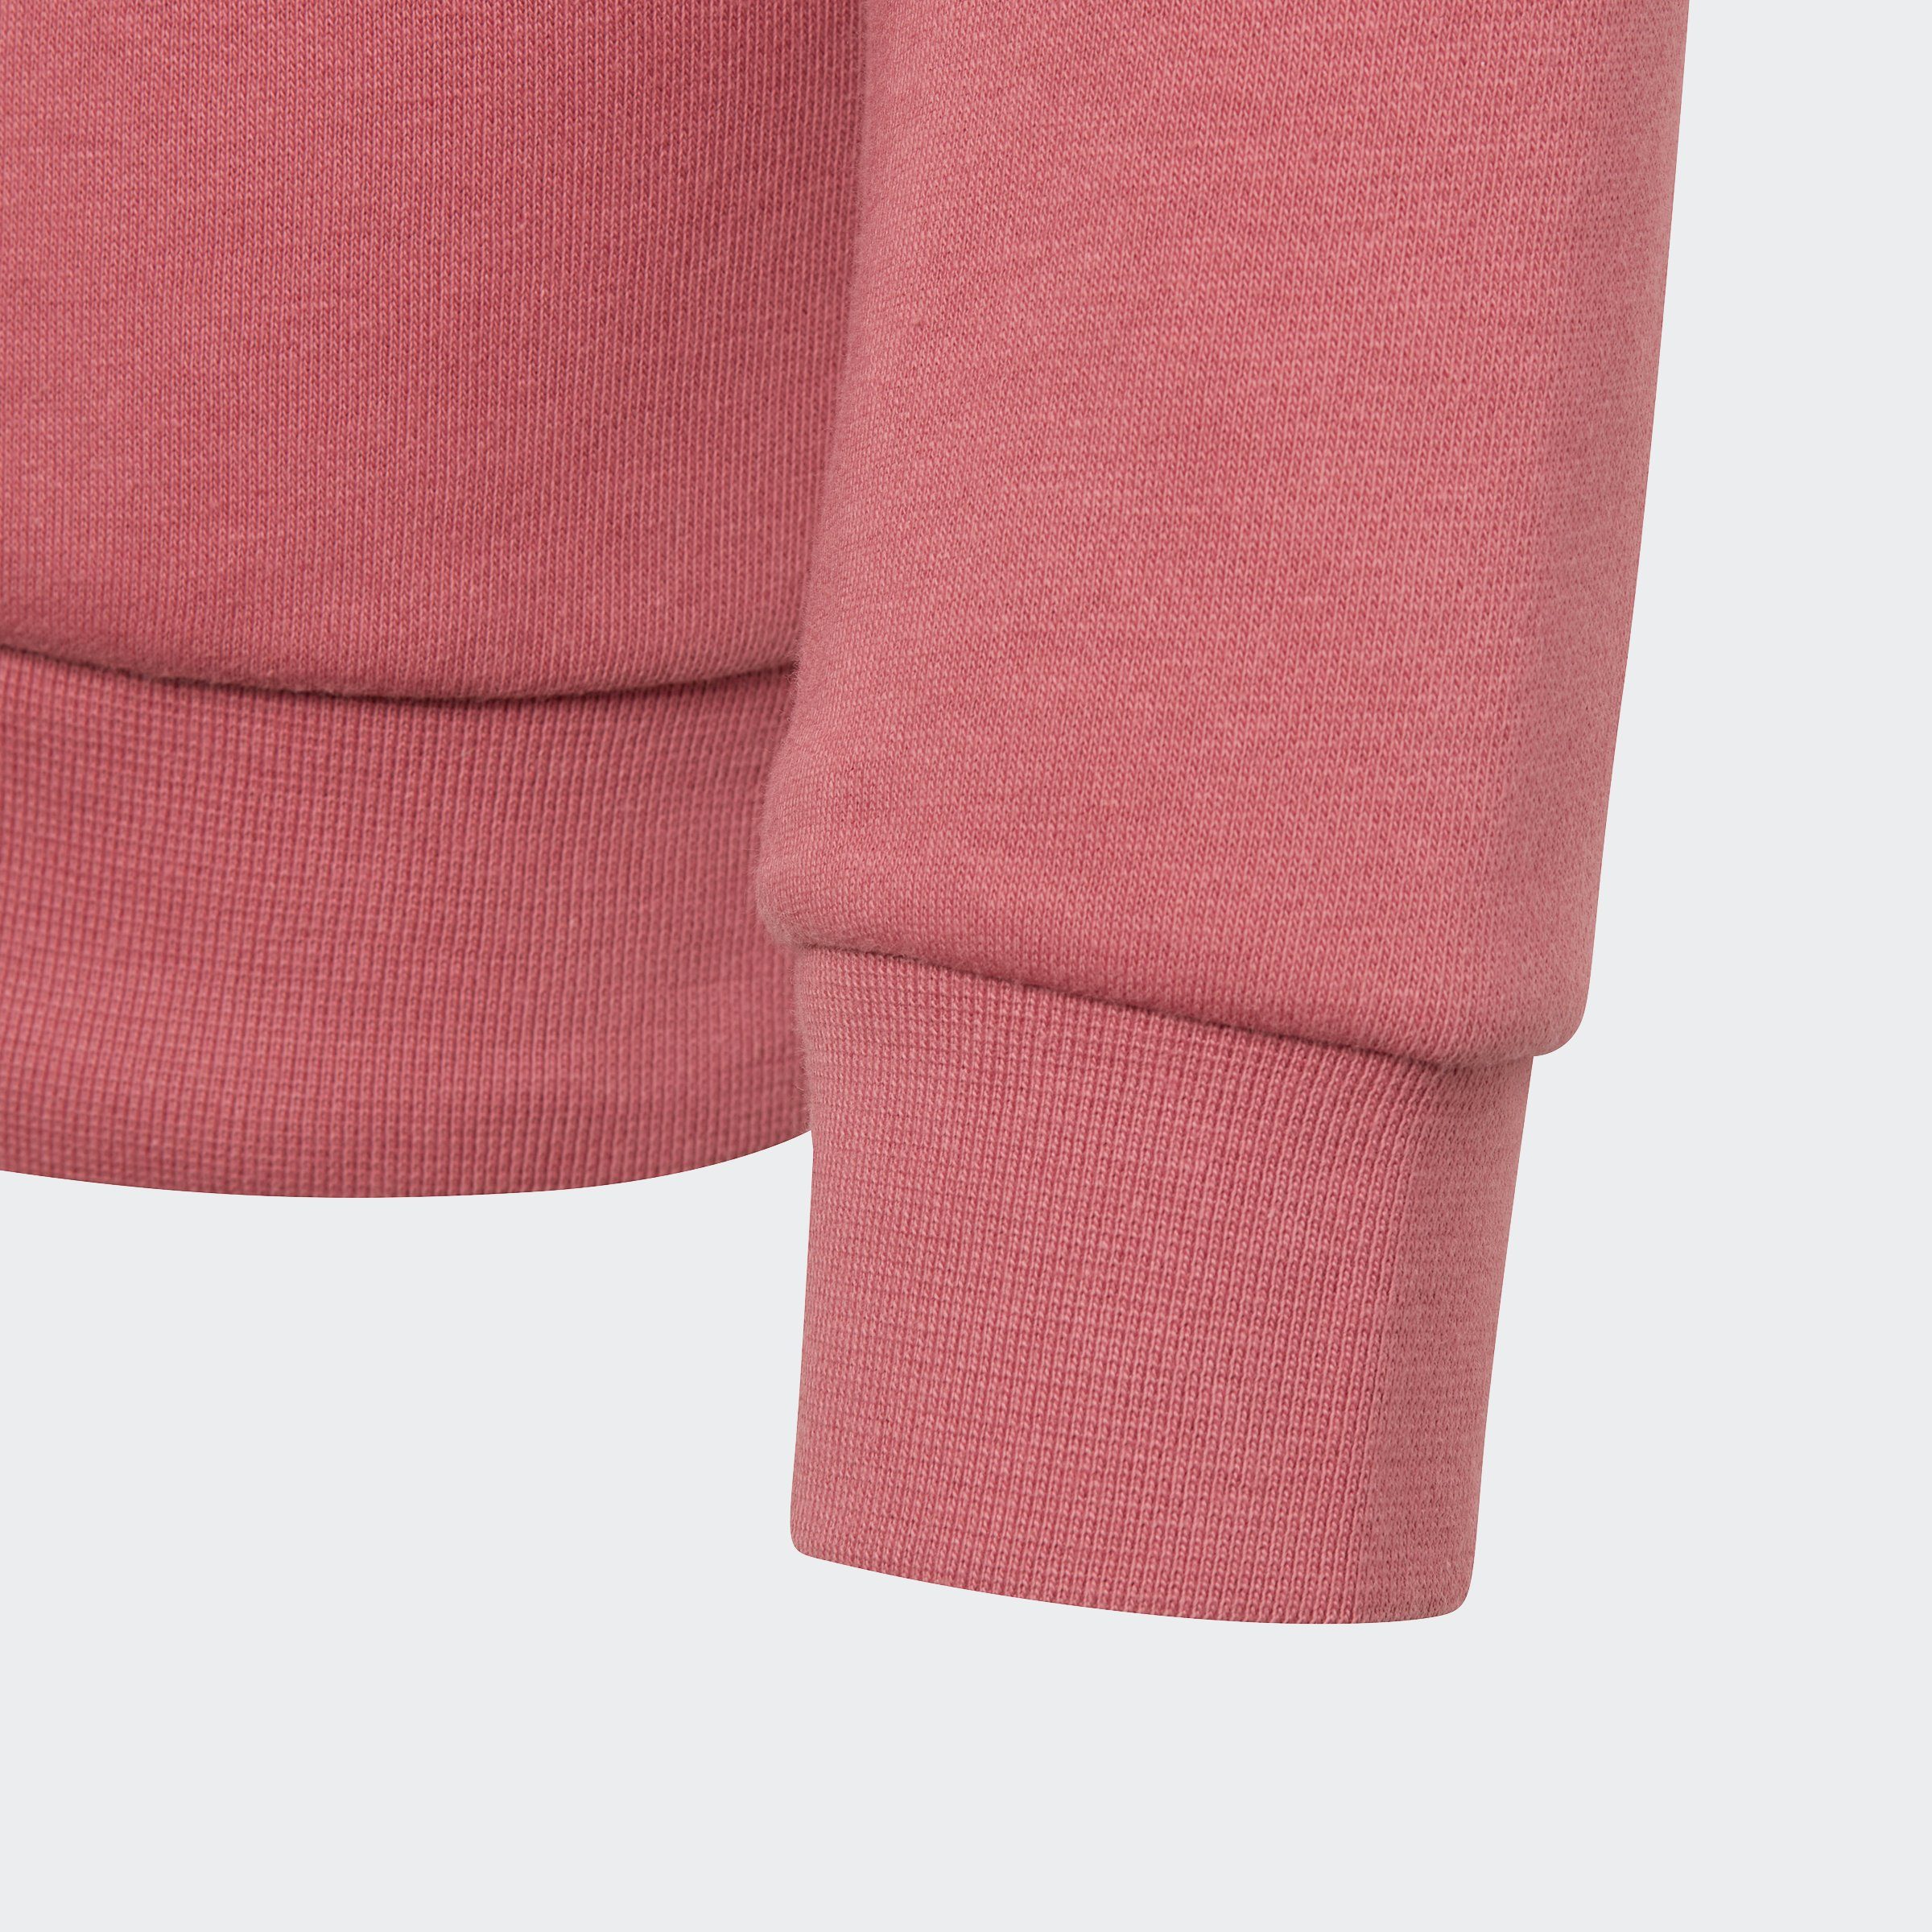 adidas Originals Sweatshirt ADICOLOR Strata Pink